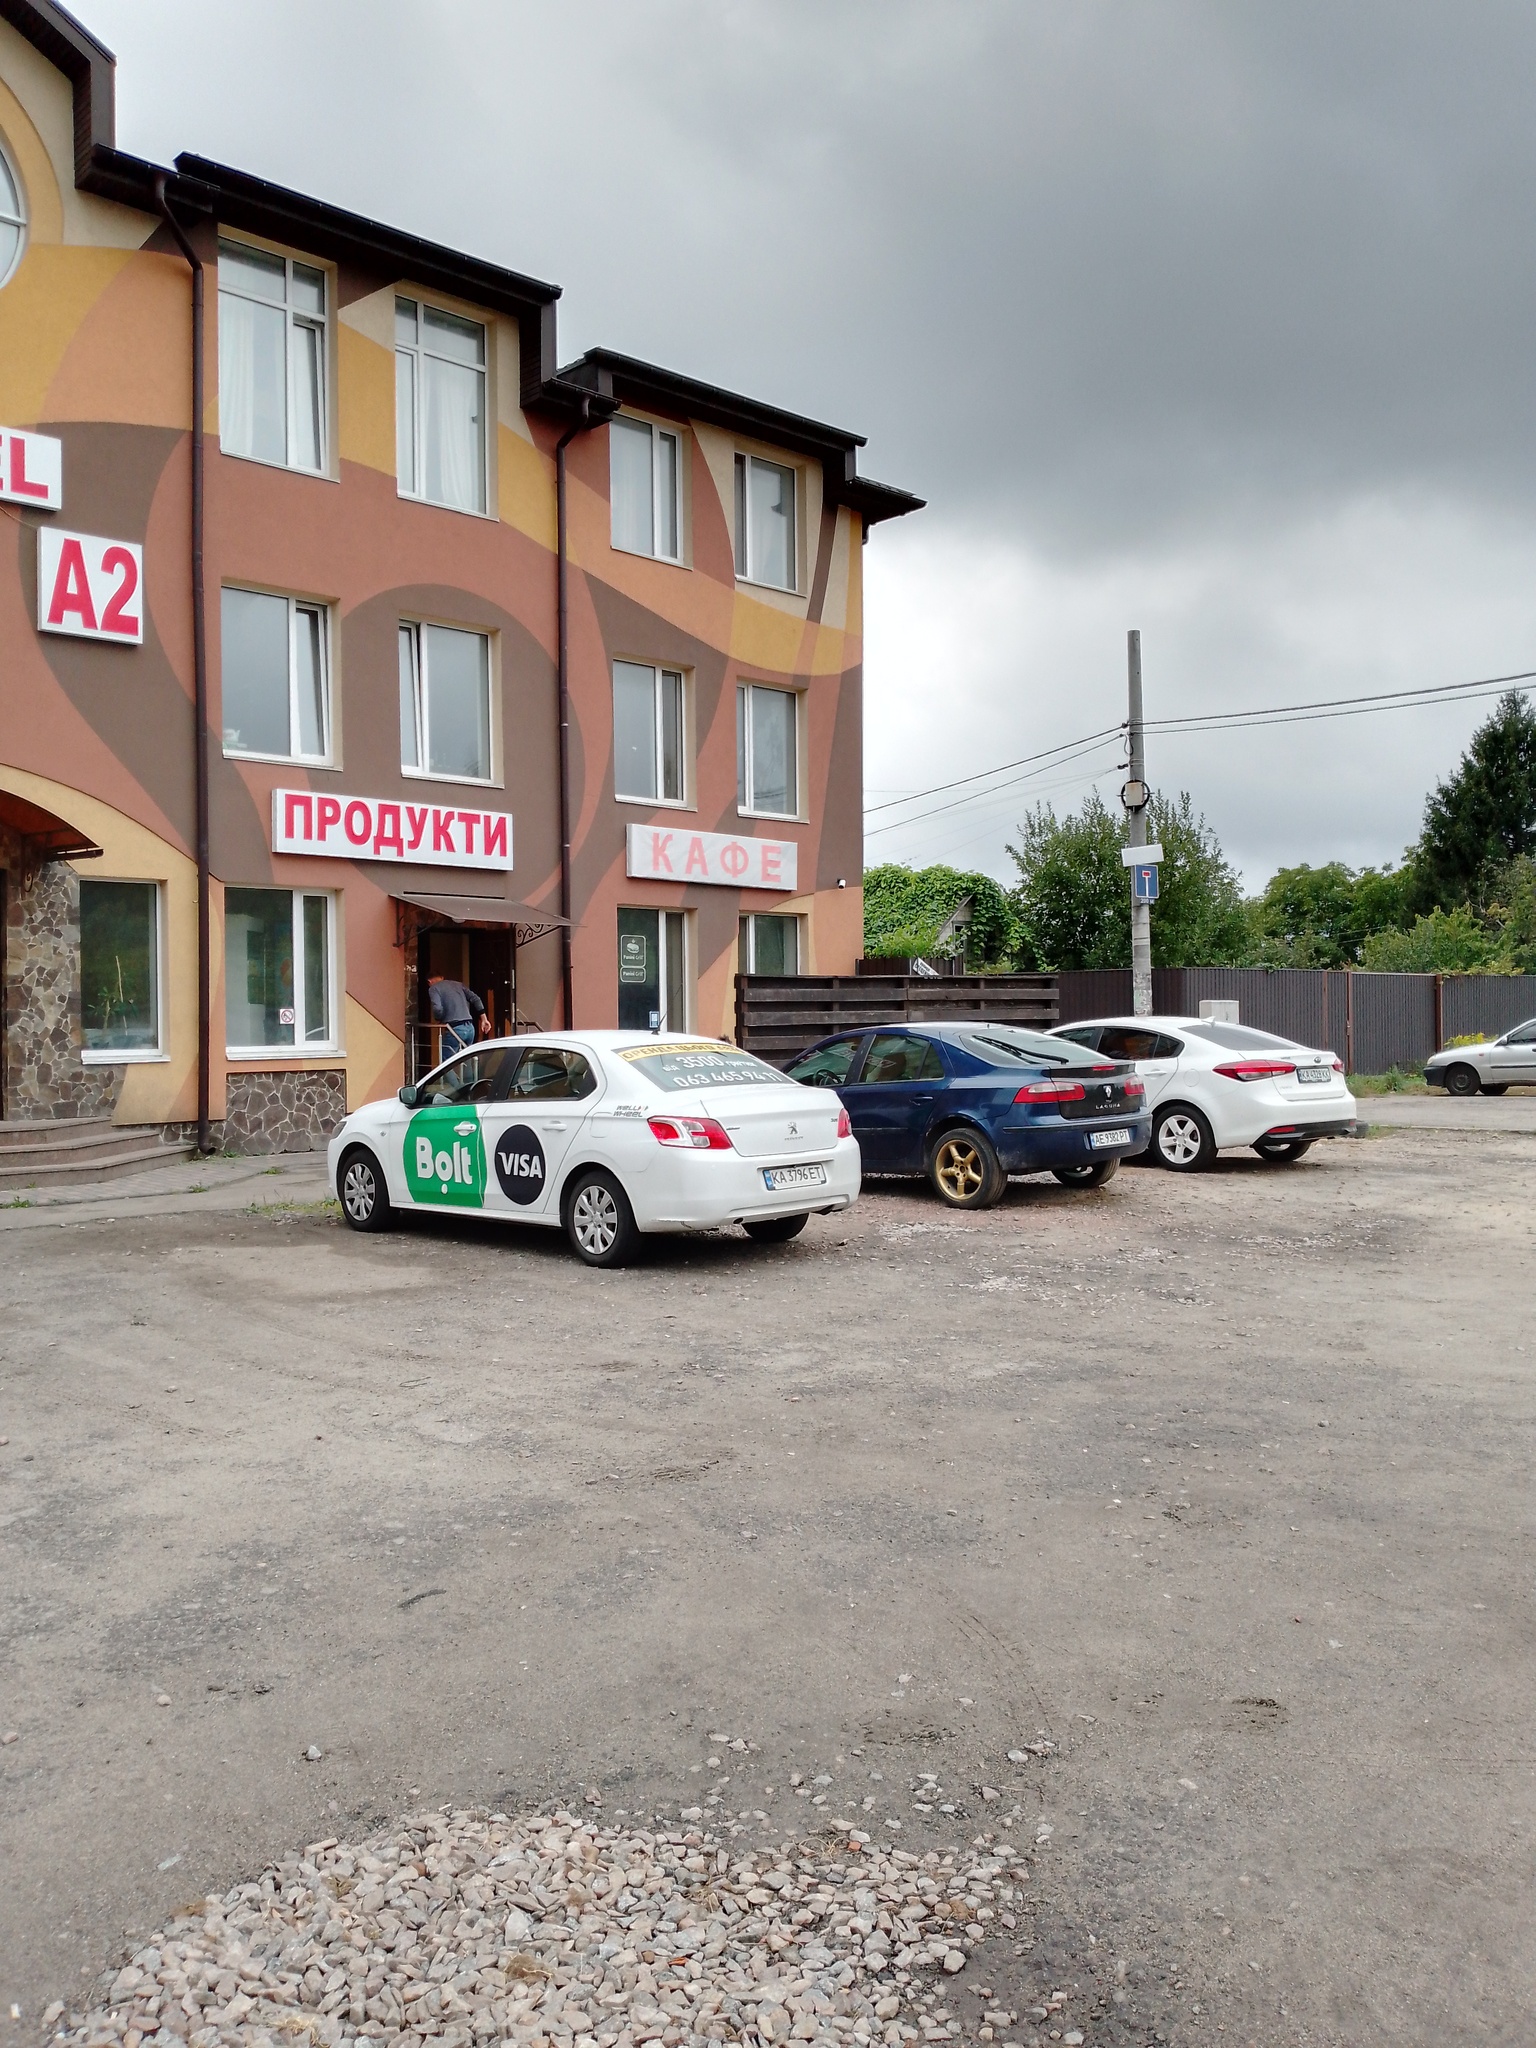 Продажа участка под индивидуальное жилое строительство 6 соток, Стеценко ул.